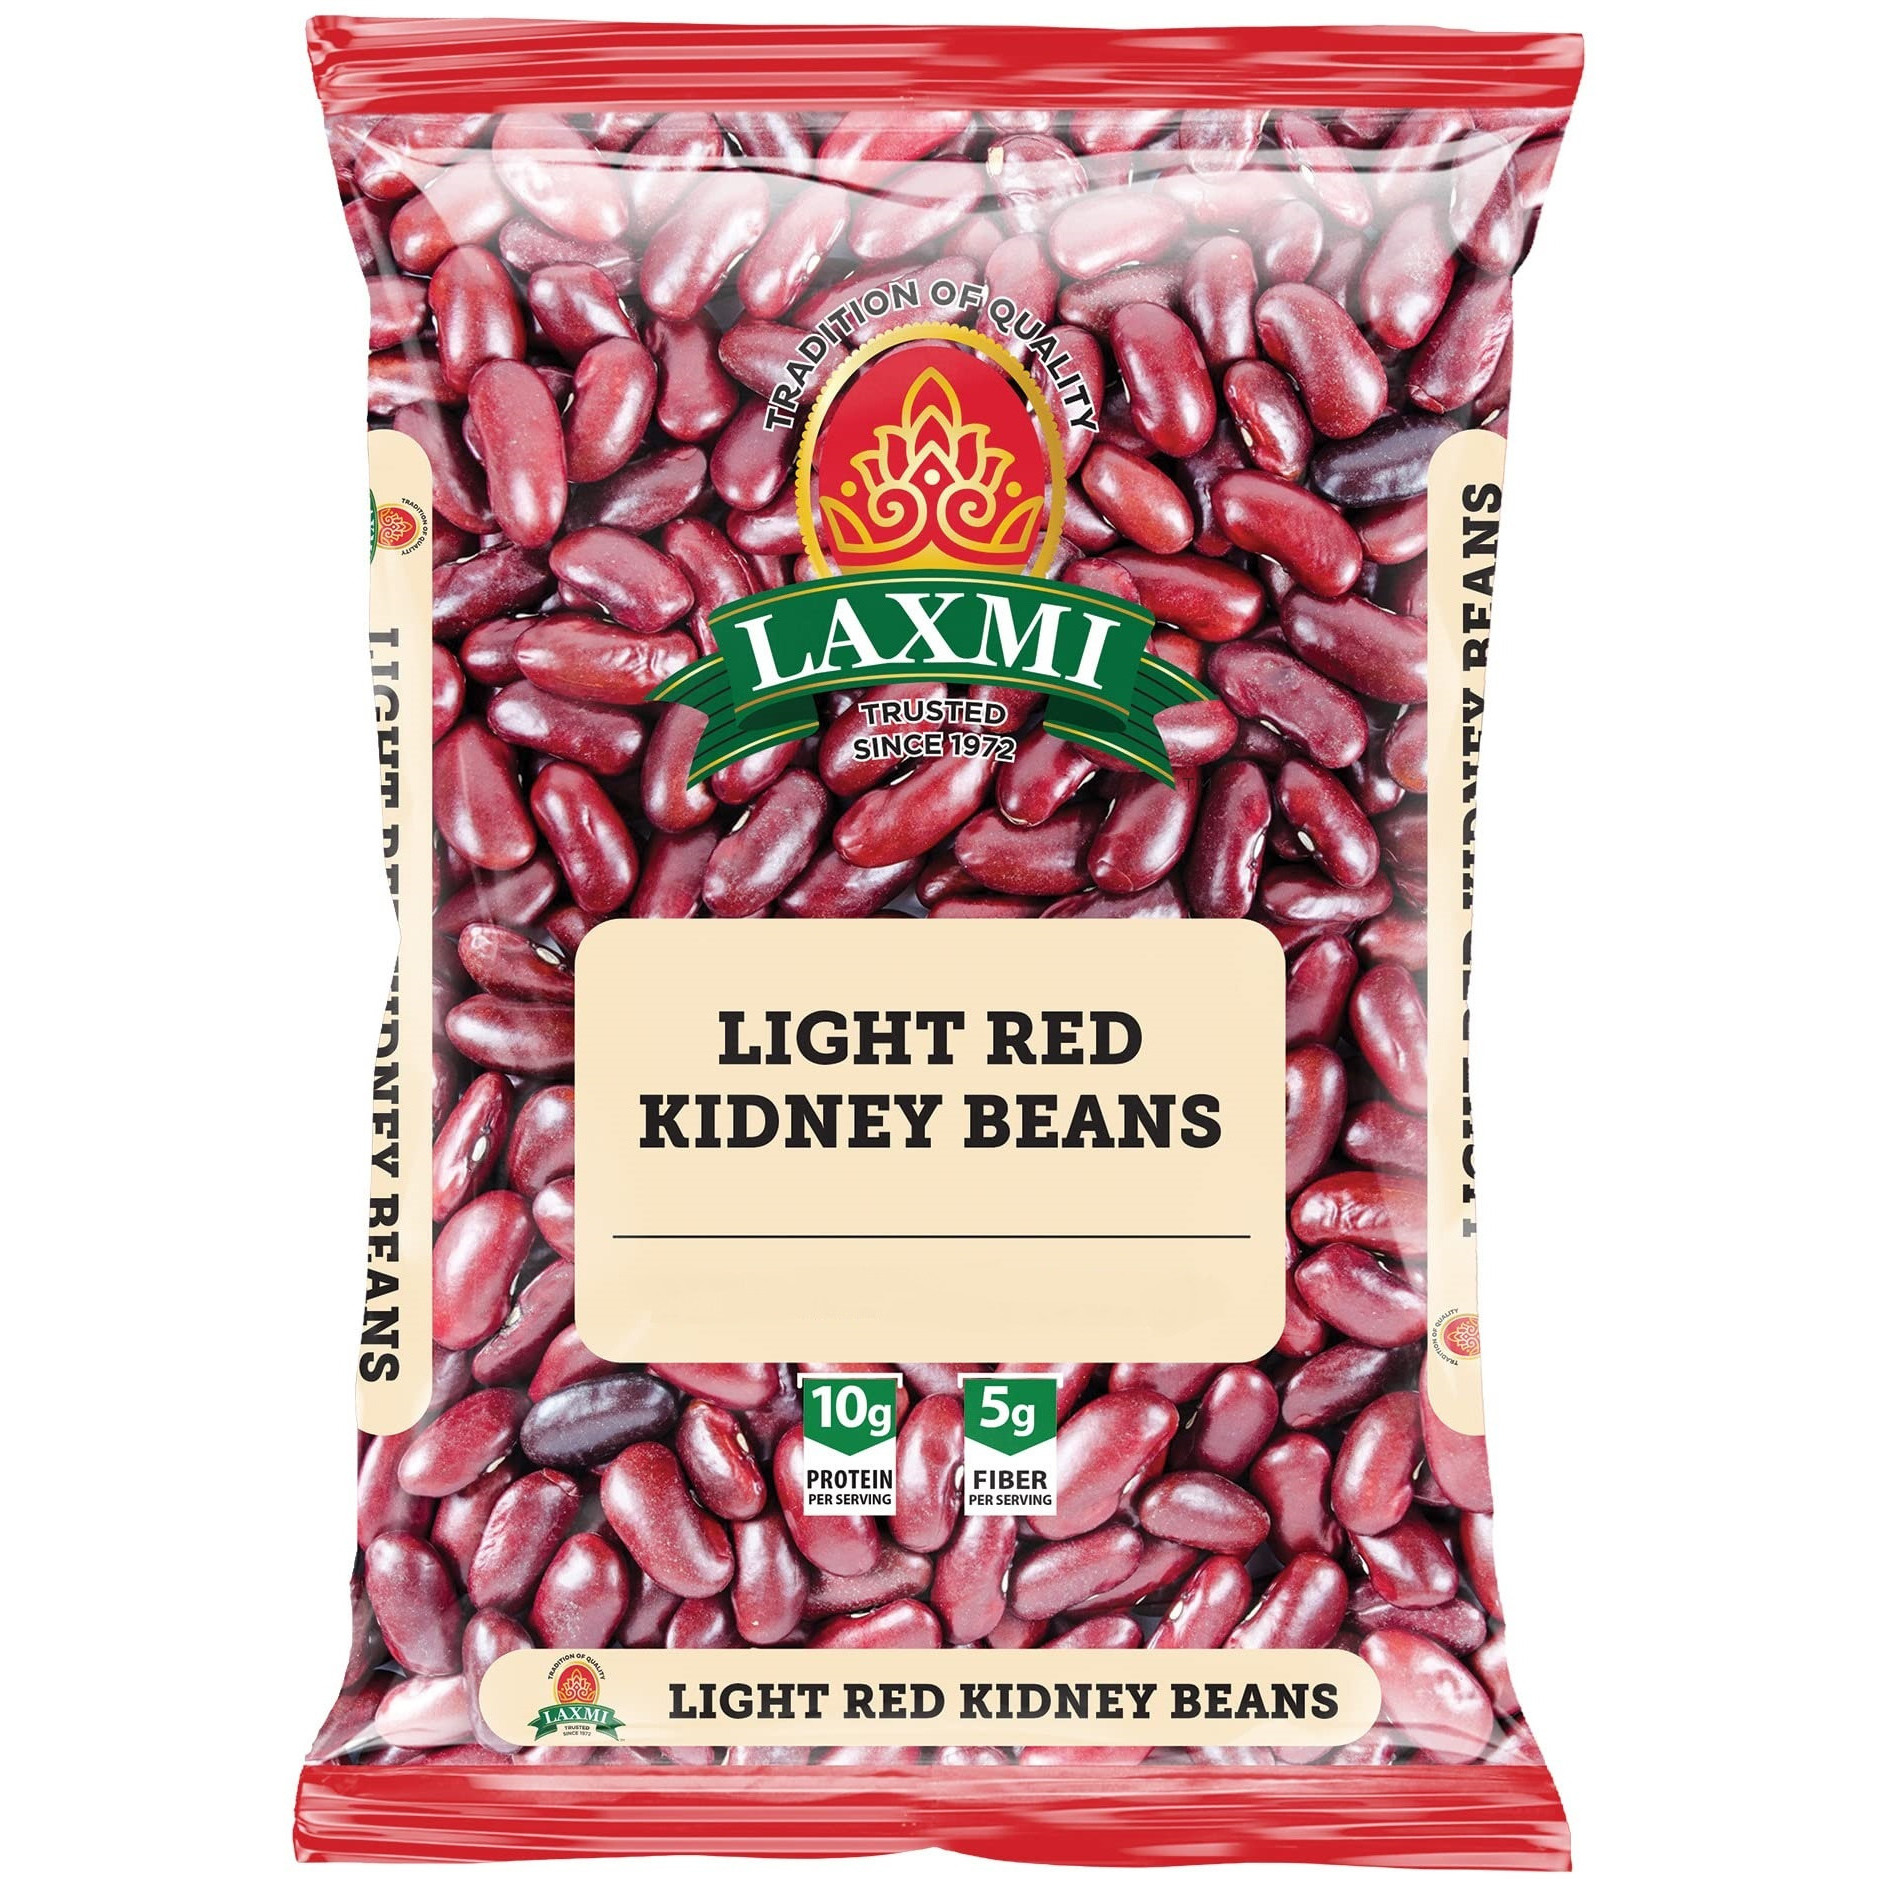 Pack of 3 - Laxmi Rajma Red Kidney Beans Light - 4 Lb (1.81 Kg)